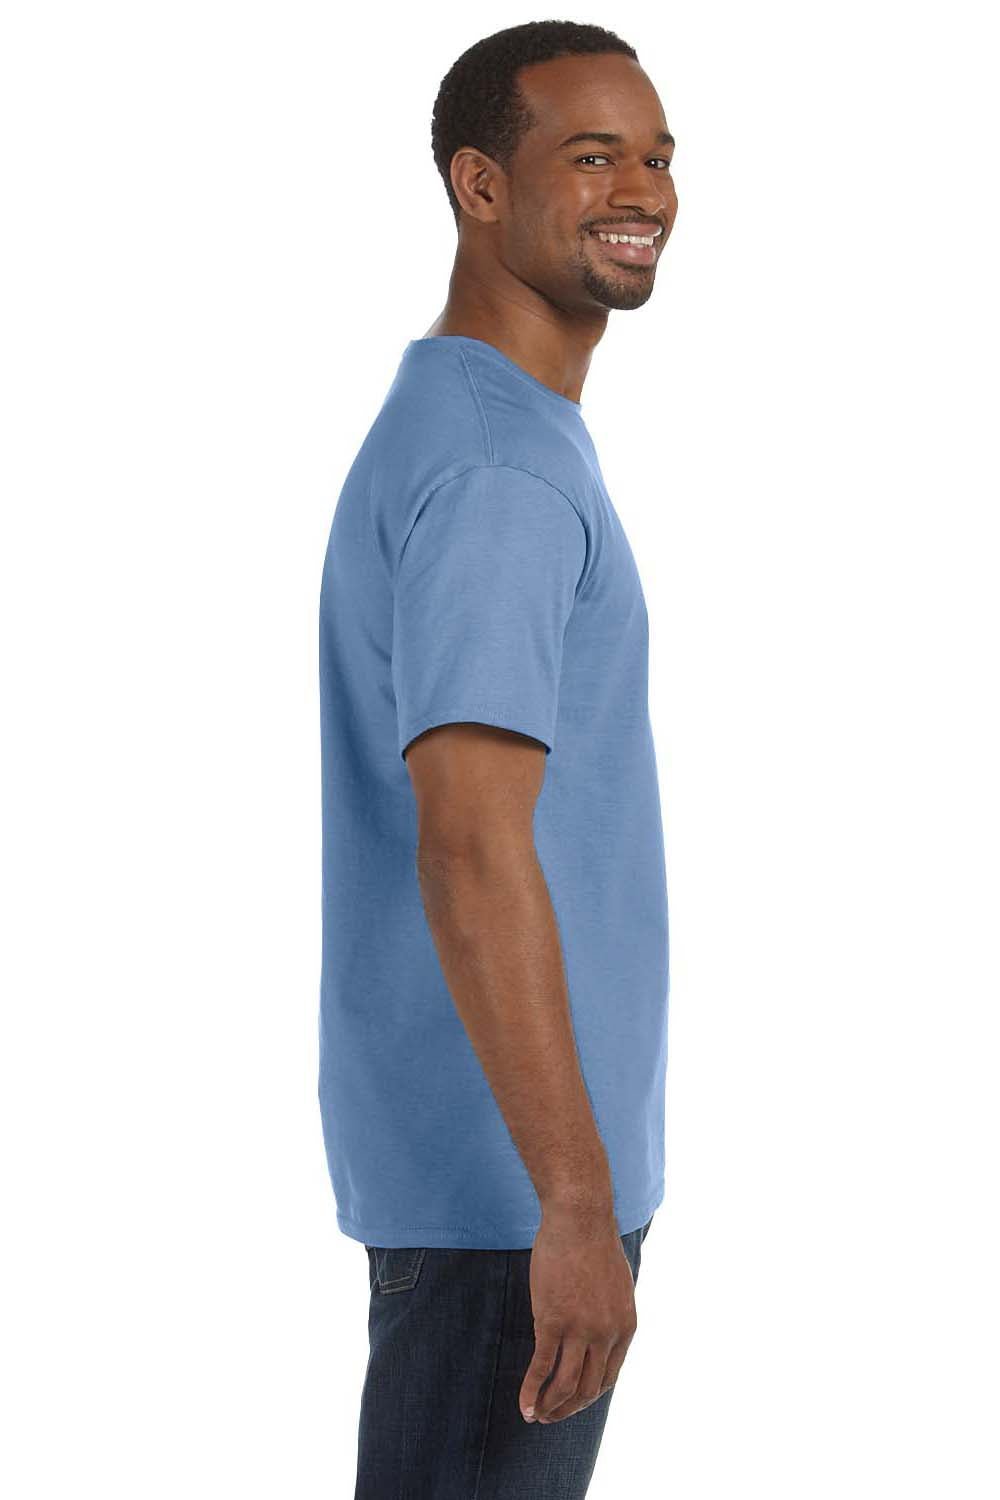 Jerzees 29M Mens Dri-Power Moisture Wicking Short Sleeve Crewneck T-Shirt Light Blue Side